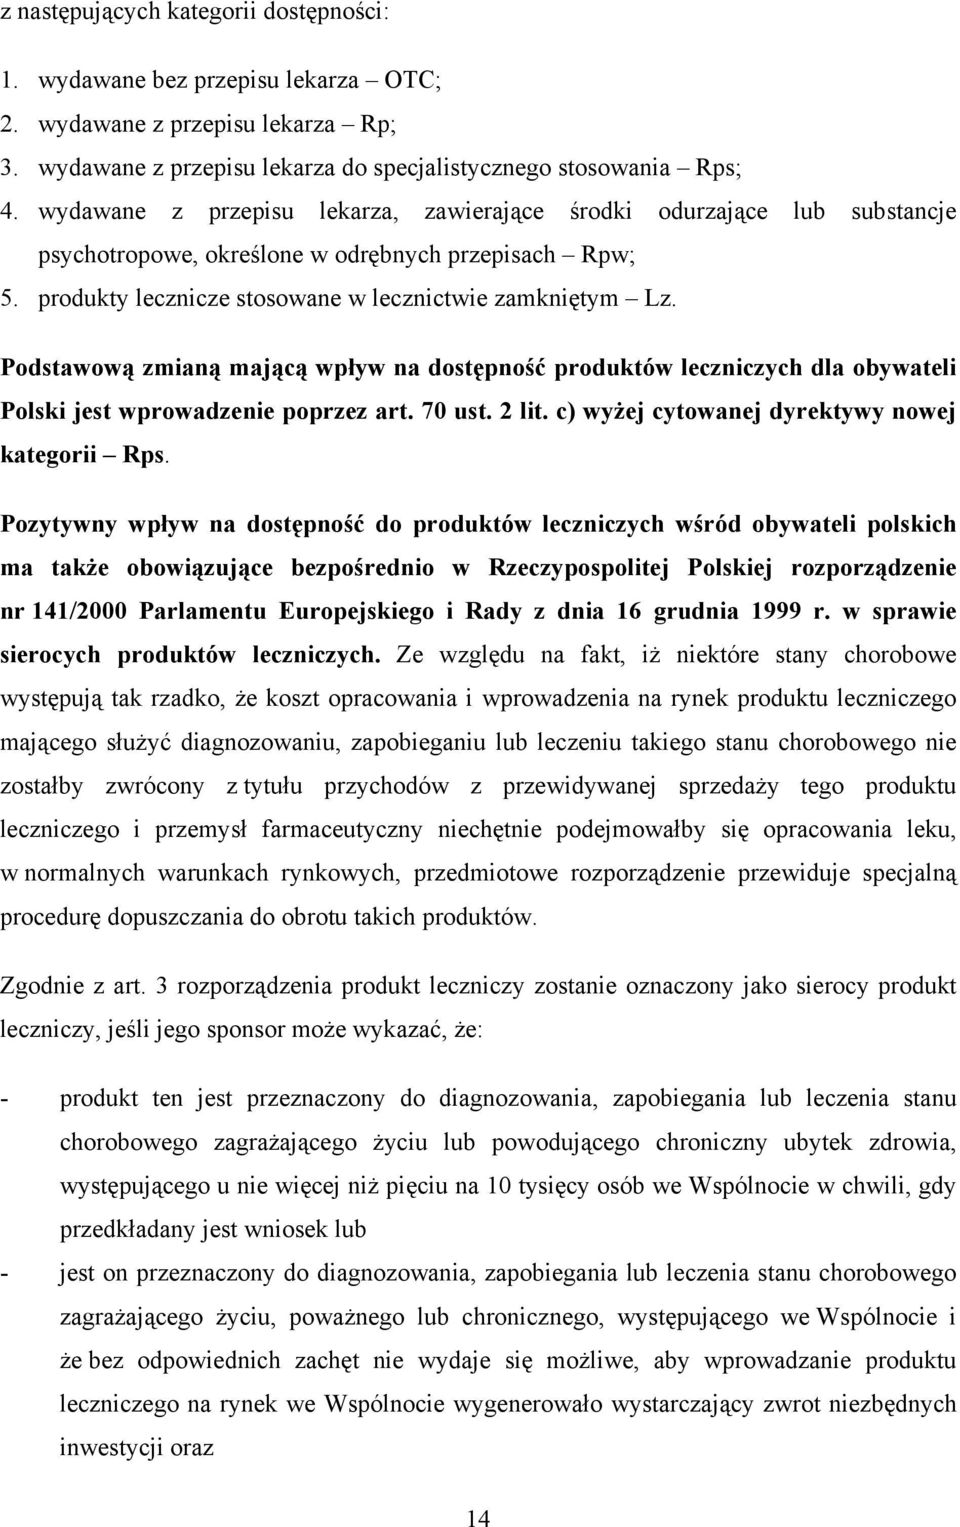 Podstawową zmianą mającą wpływ na dostępność produktów leczniczych dla obywateli Polski jest wprowadzenie poprzez art. 70 ust. 2 lit. c) wyżej cytowanej dyrektywy nowej kategorii Rps.